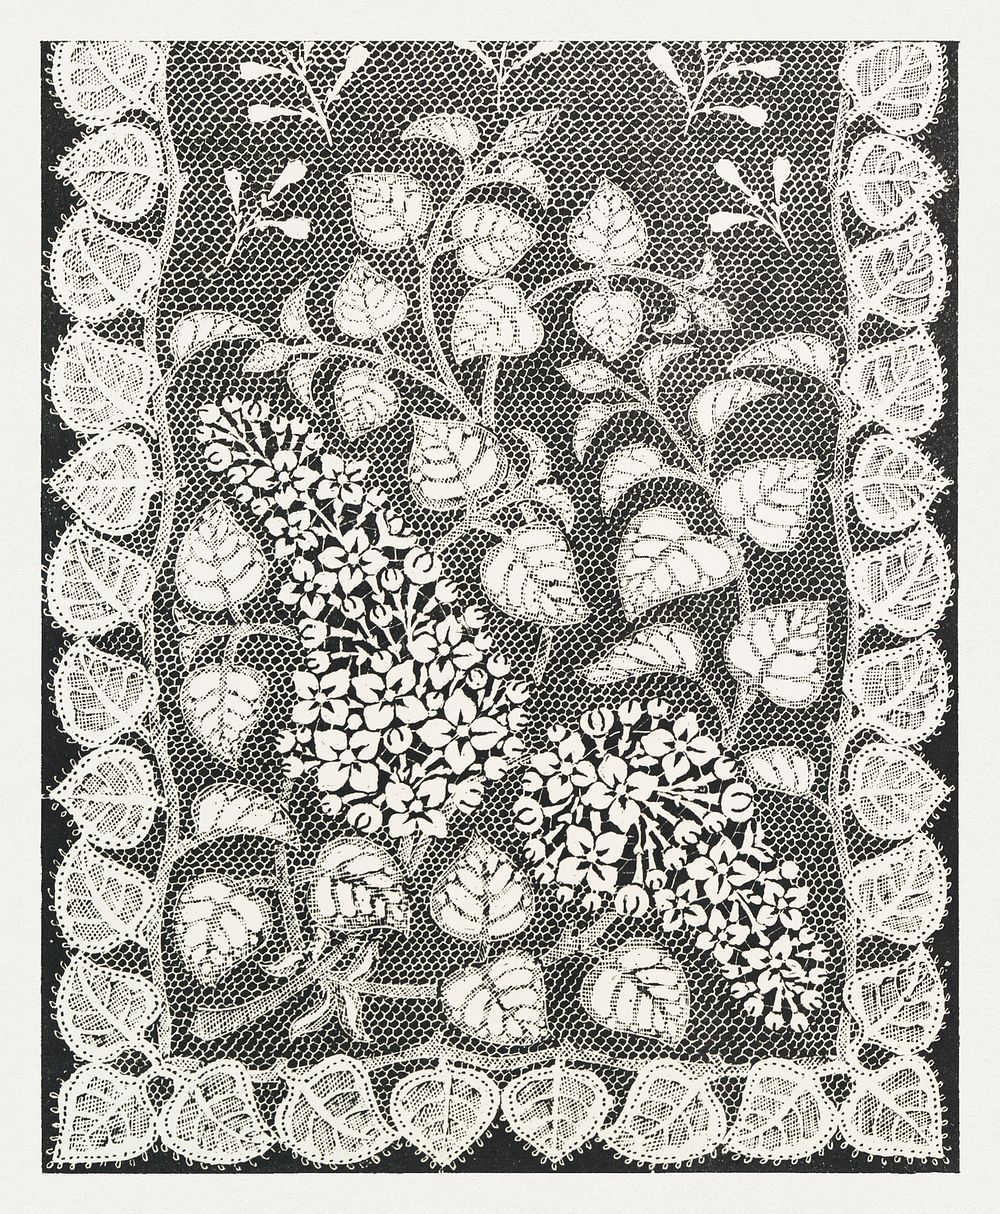 Art nouveau lilac flower pattern design resource